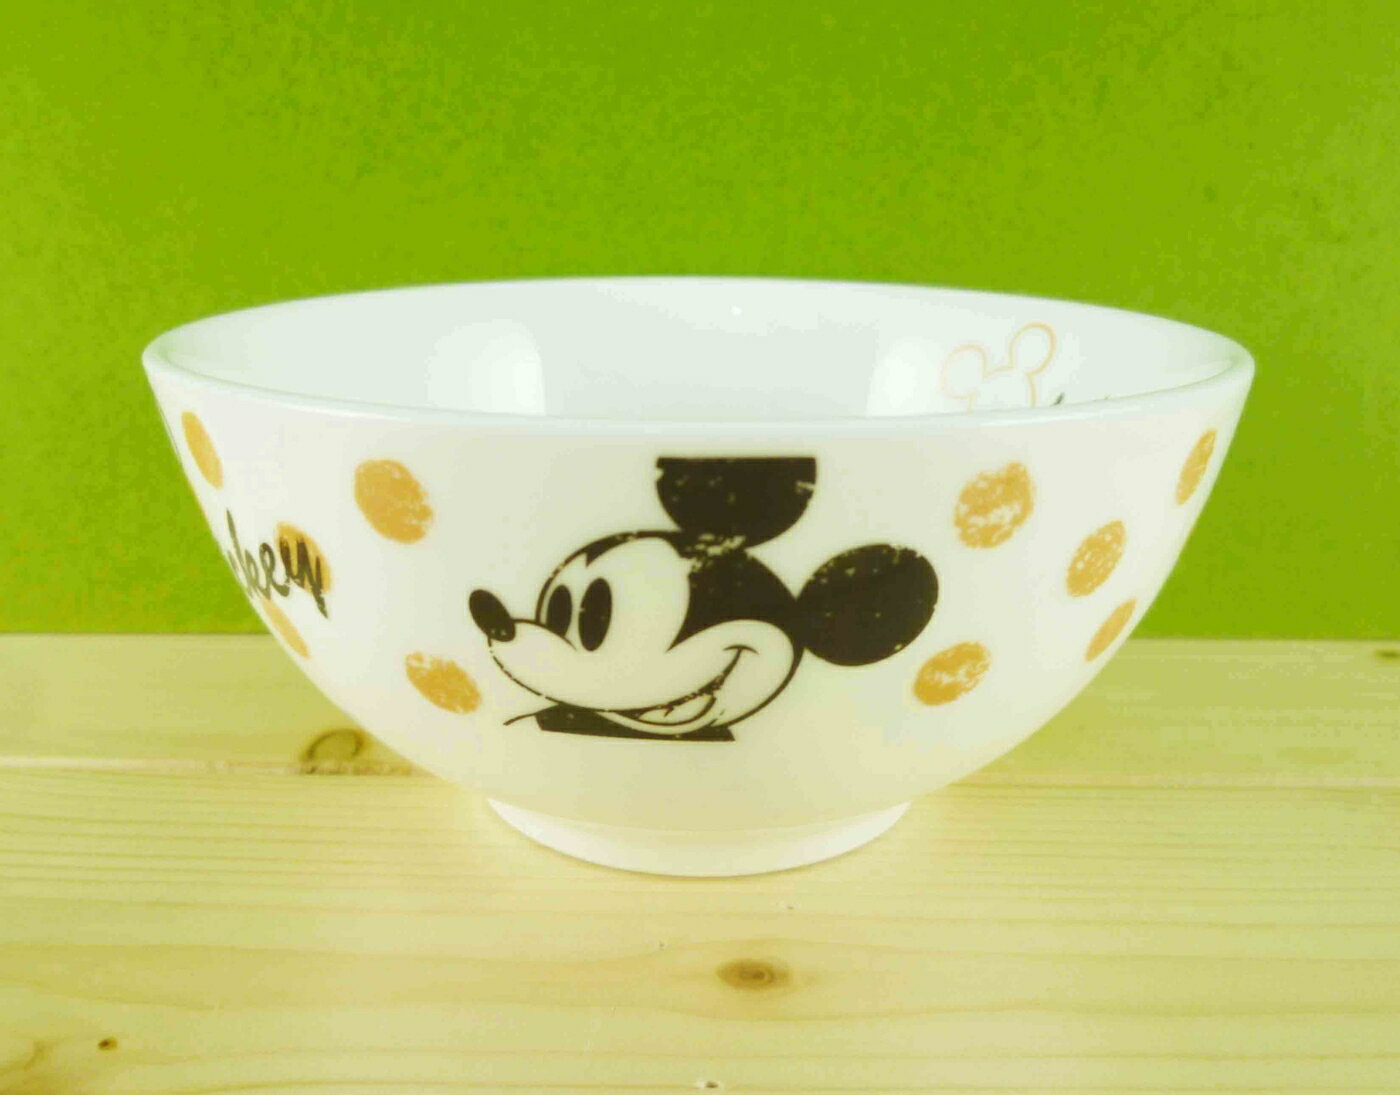 【震撼精品百貨】Micky Mouse 米奇/米妮 飯碗-圓點 震撼日式精品百貨